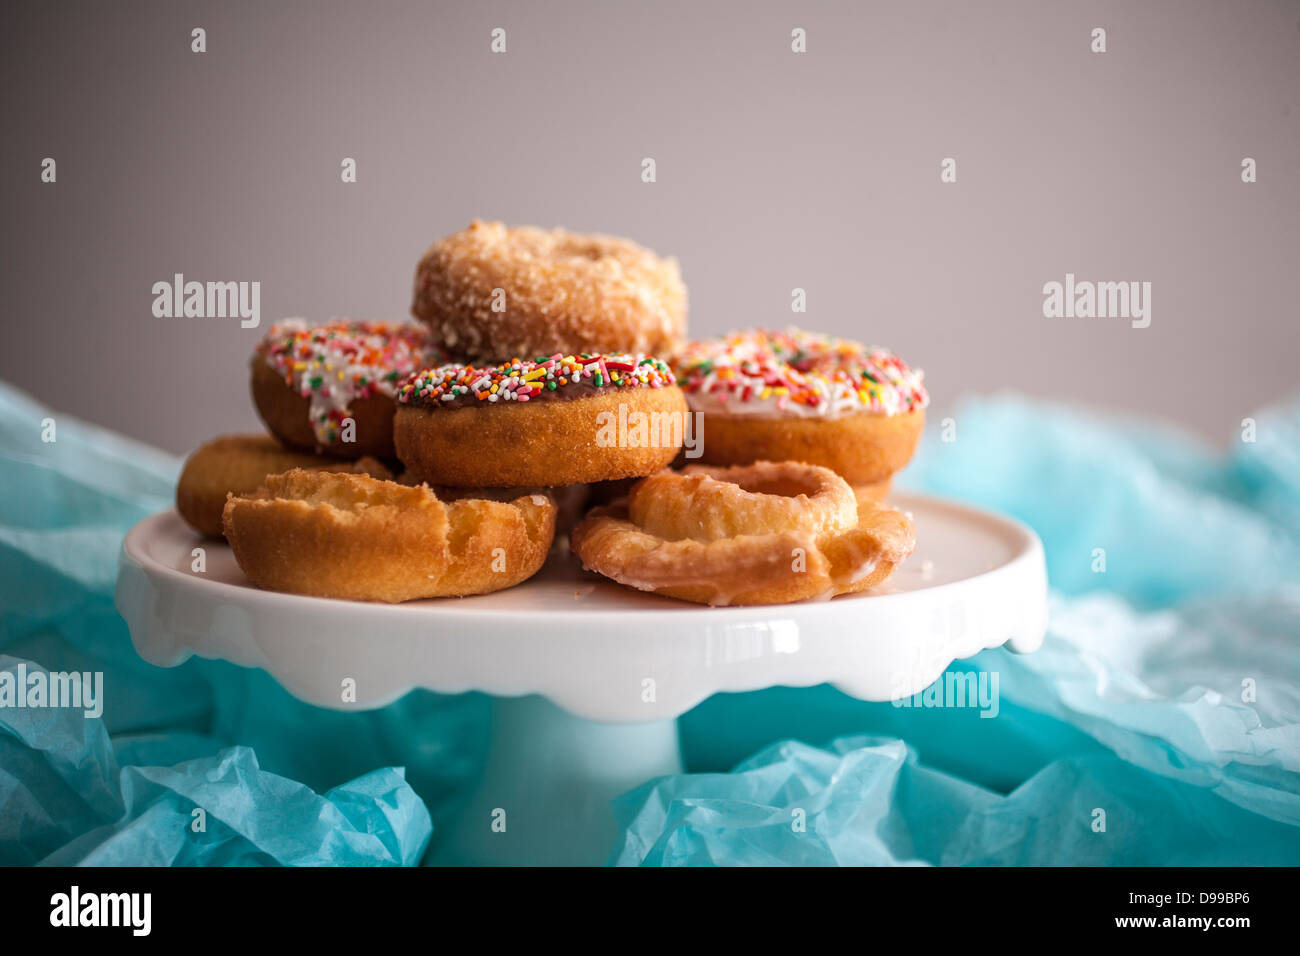 Mezcla colorida donuts en una charola Foto de stock